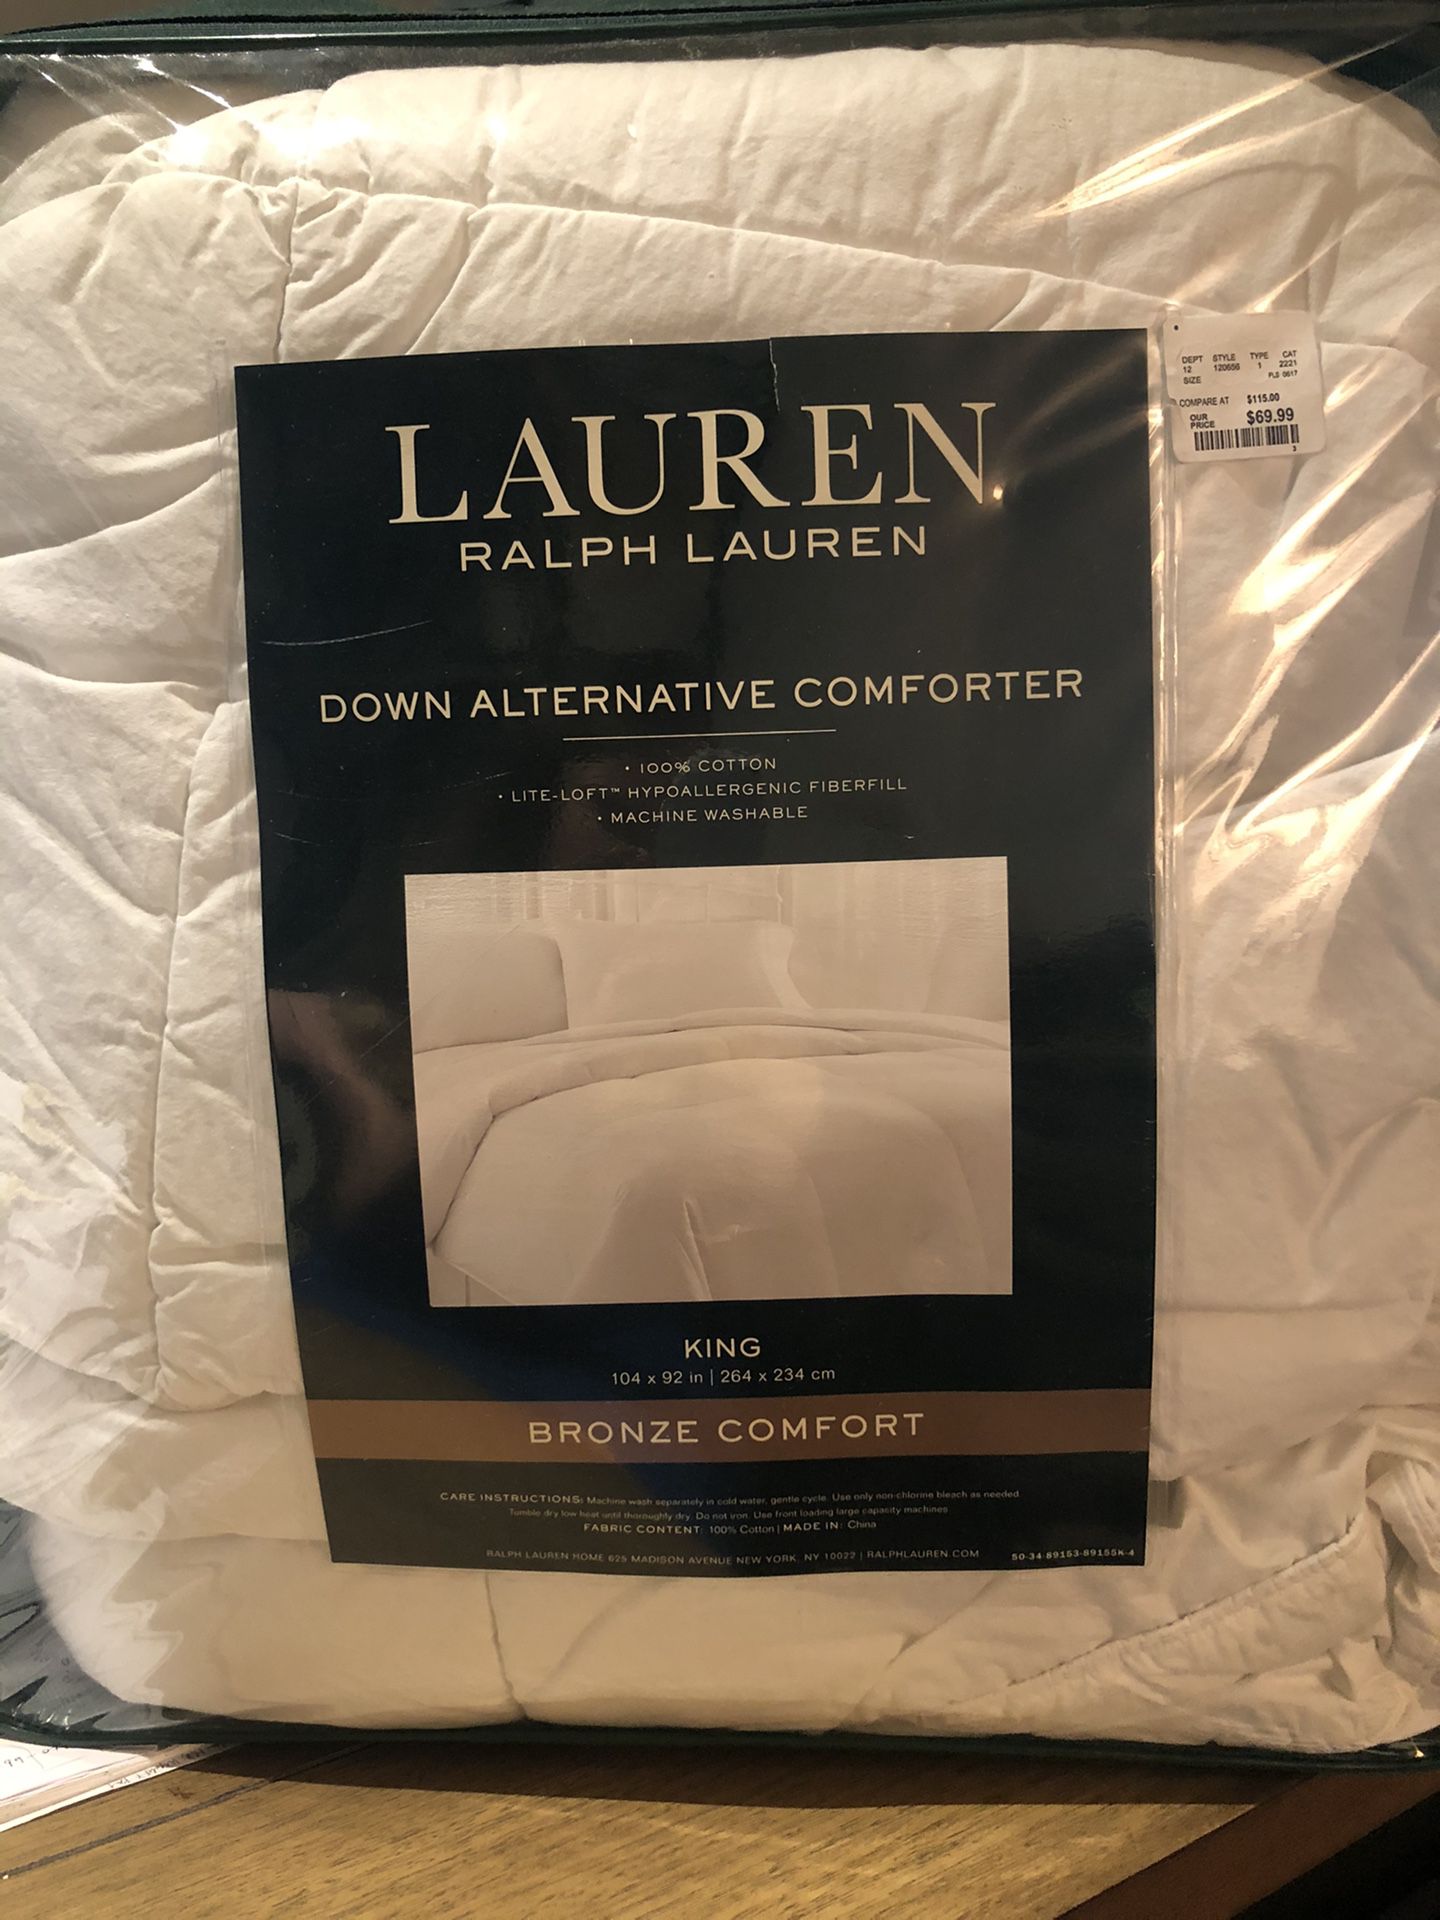 RL King Down Alternative Comforter